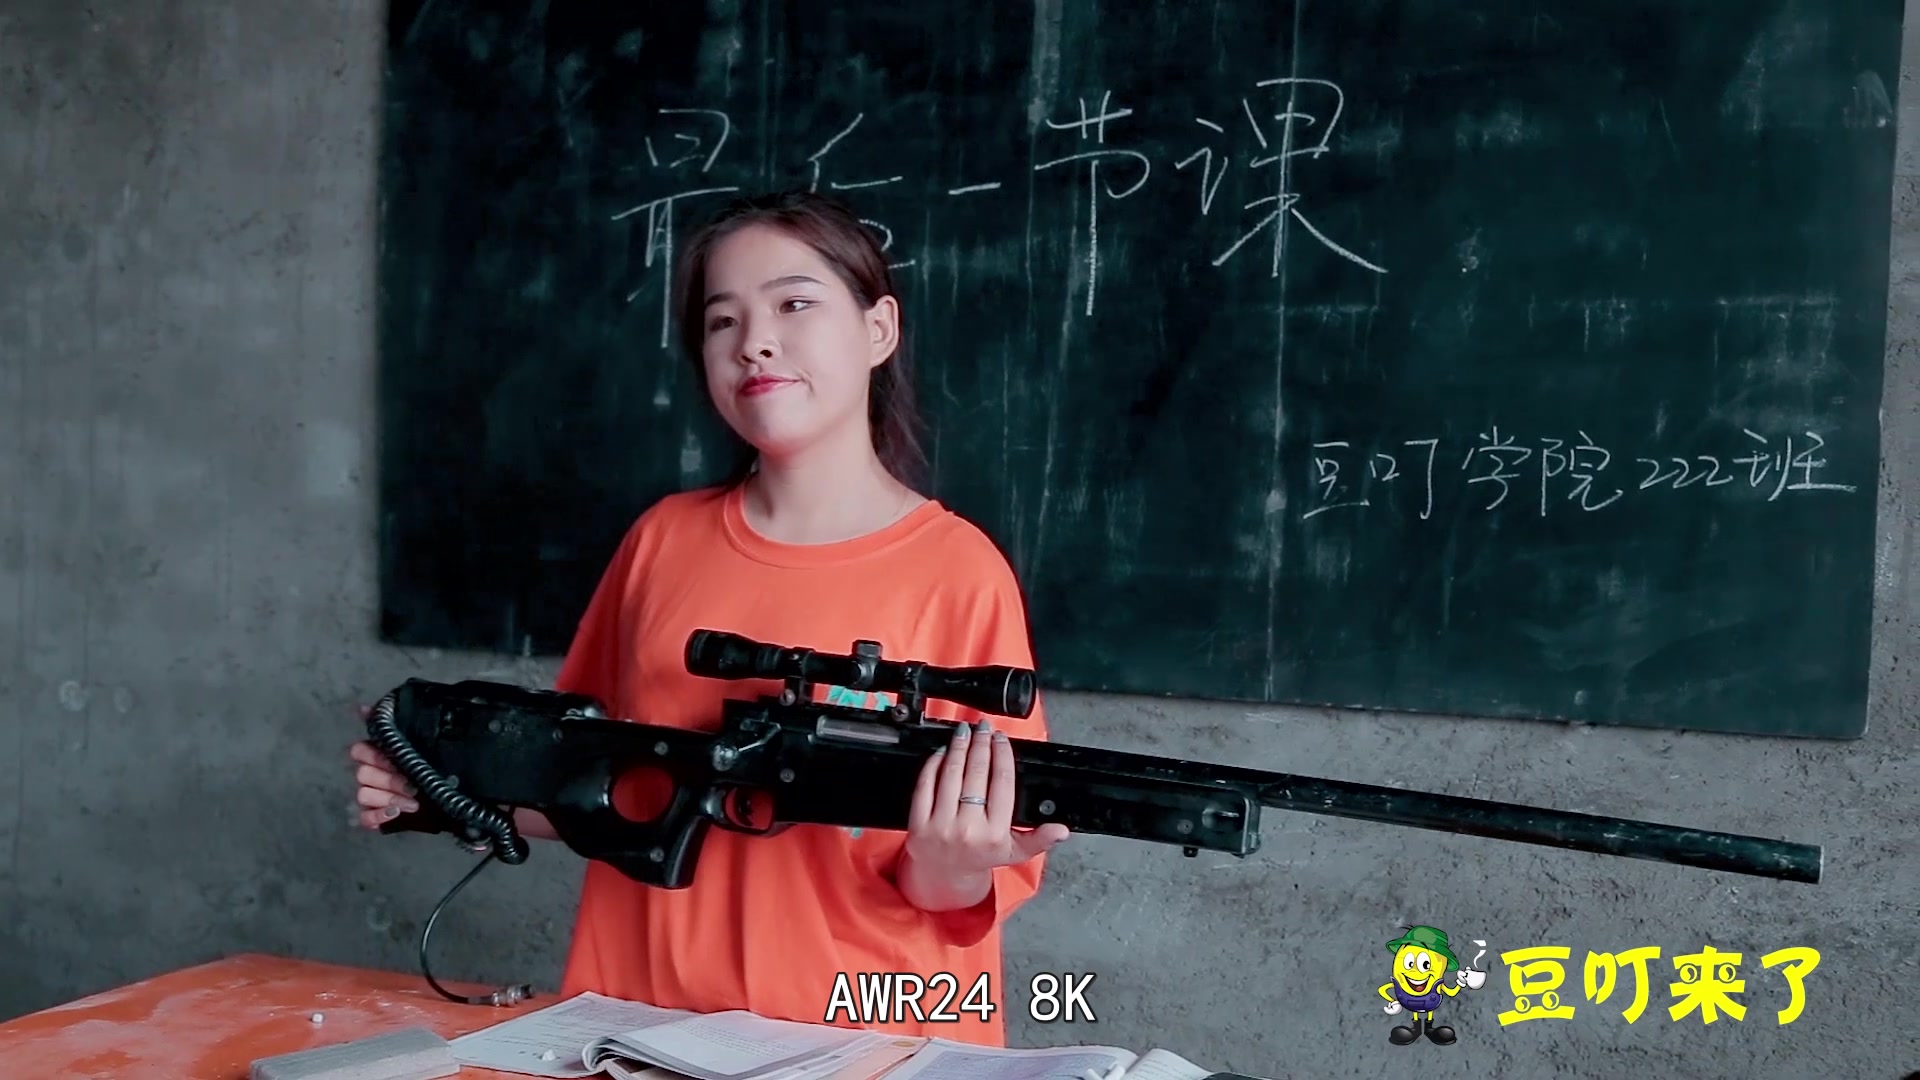 老师课堂上展示一把玩具枪，一个学生说是M24，另一个学生说是AWM